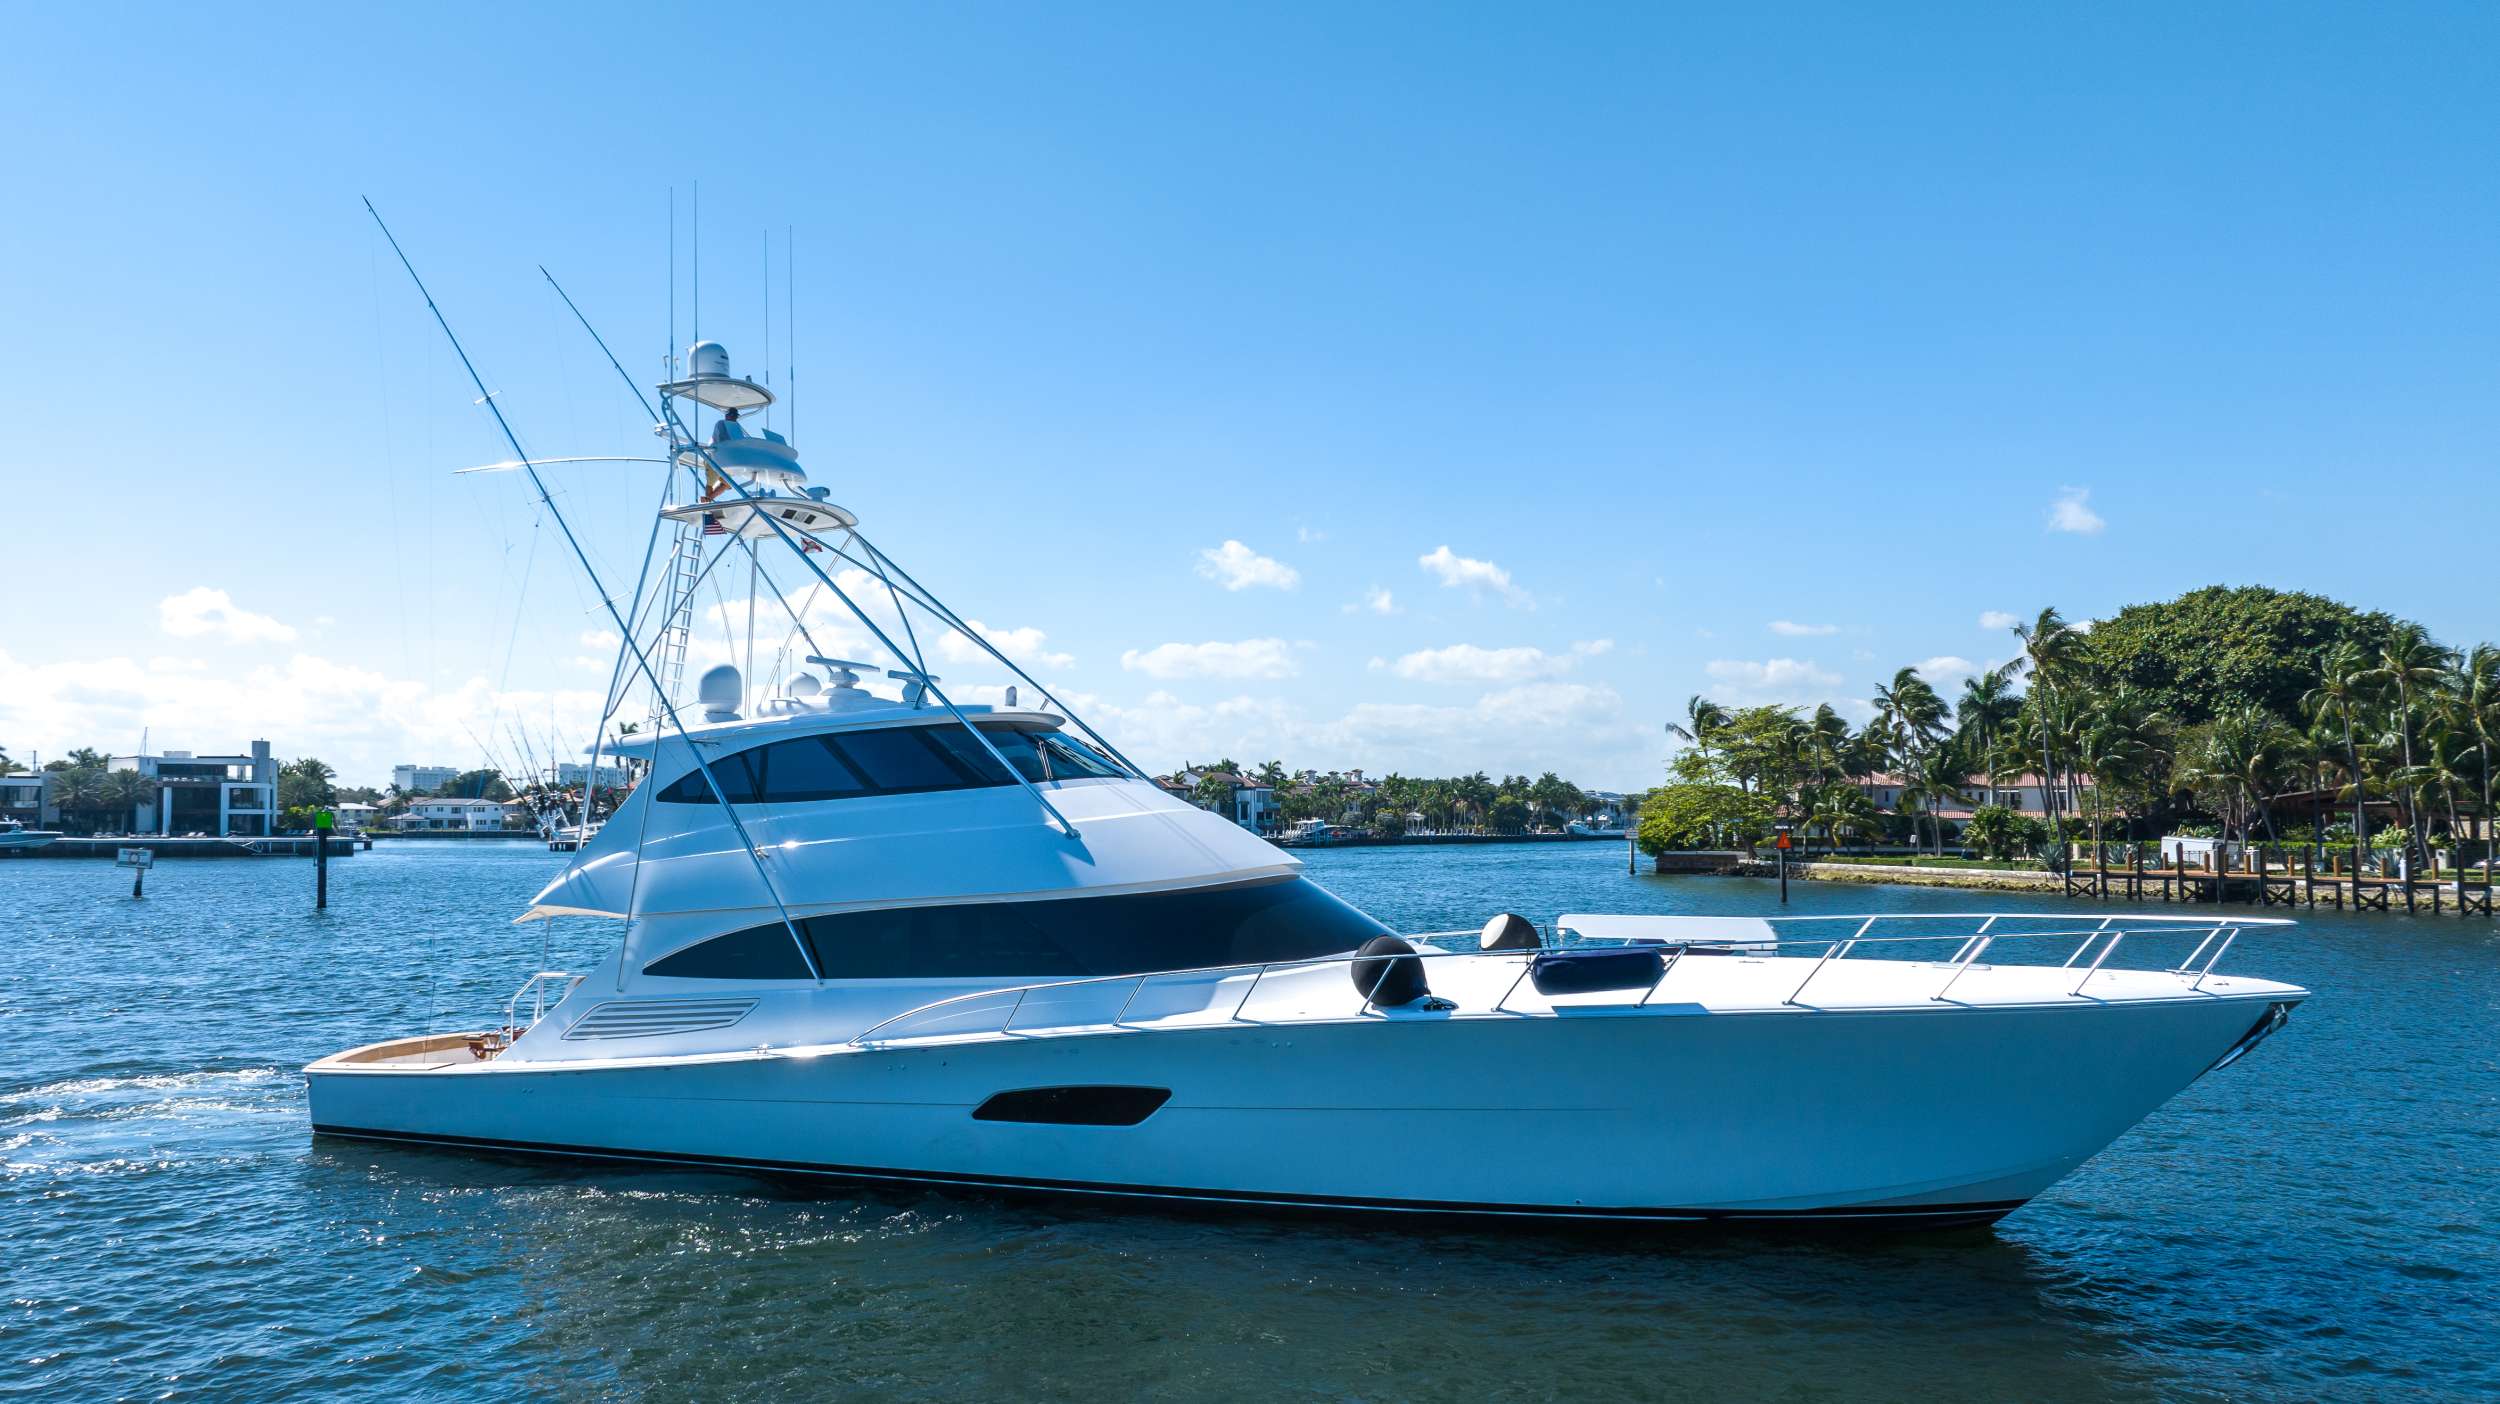 Astrikos - Yacht Charter Miami & Boat hire in Florida & Bahamas 1